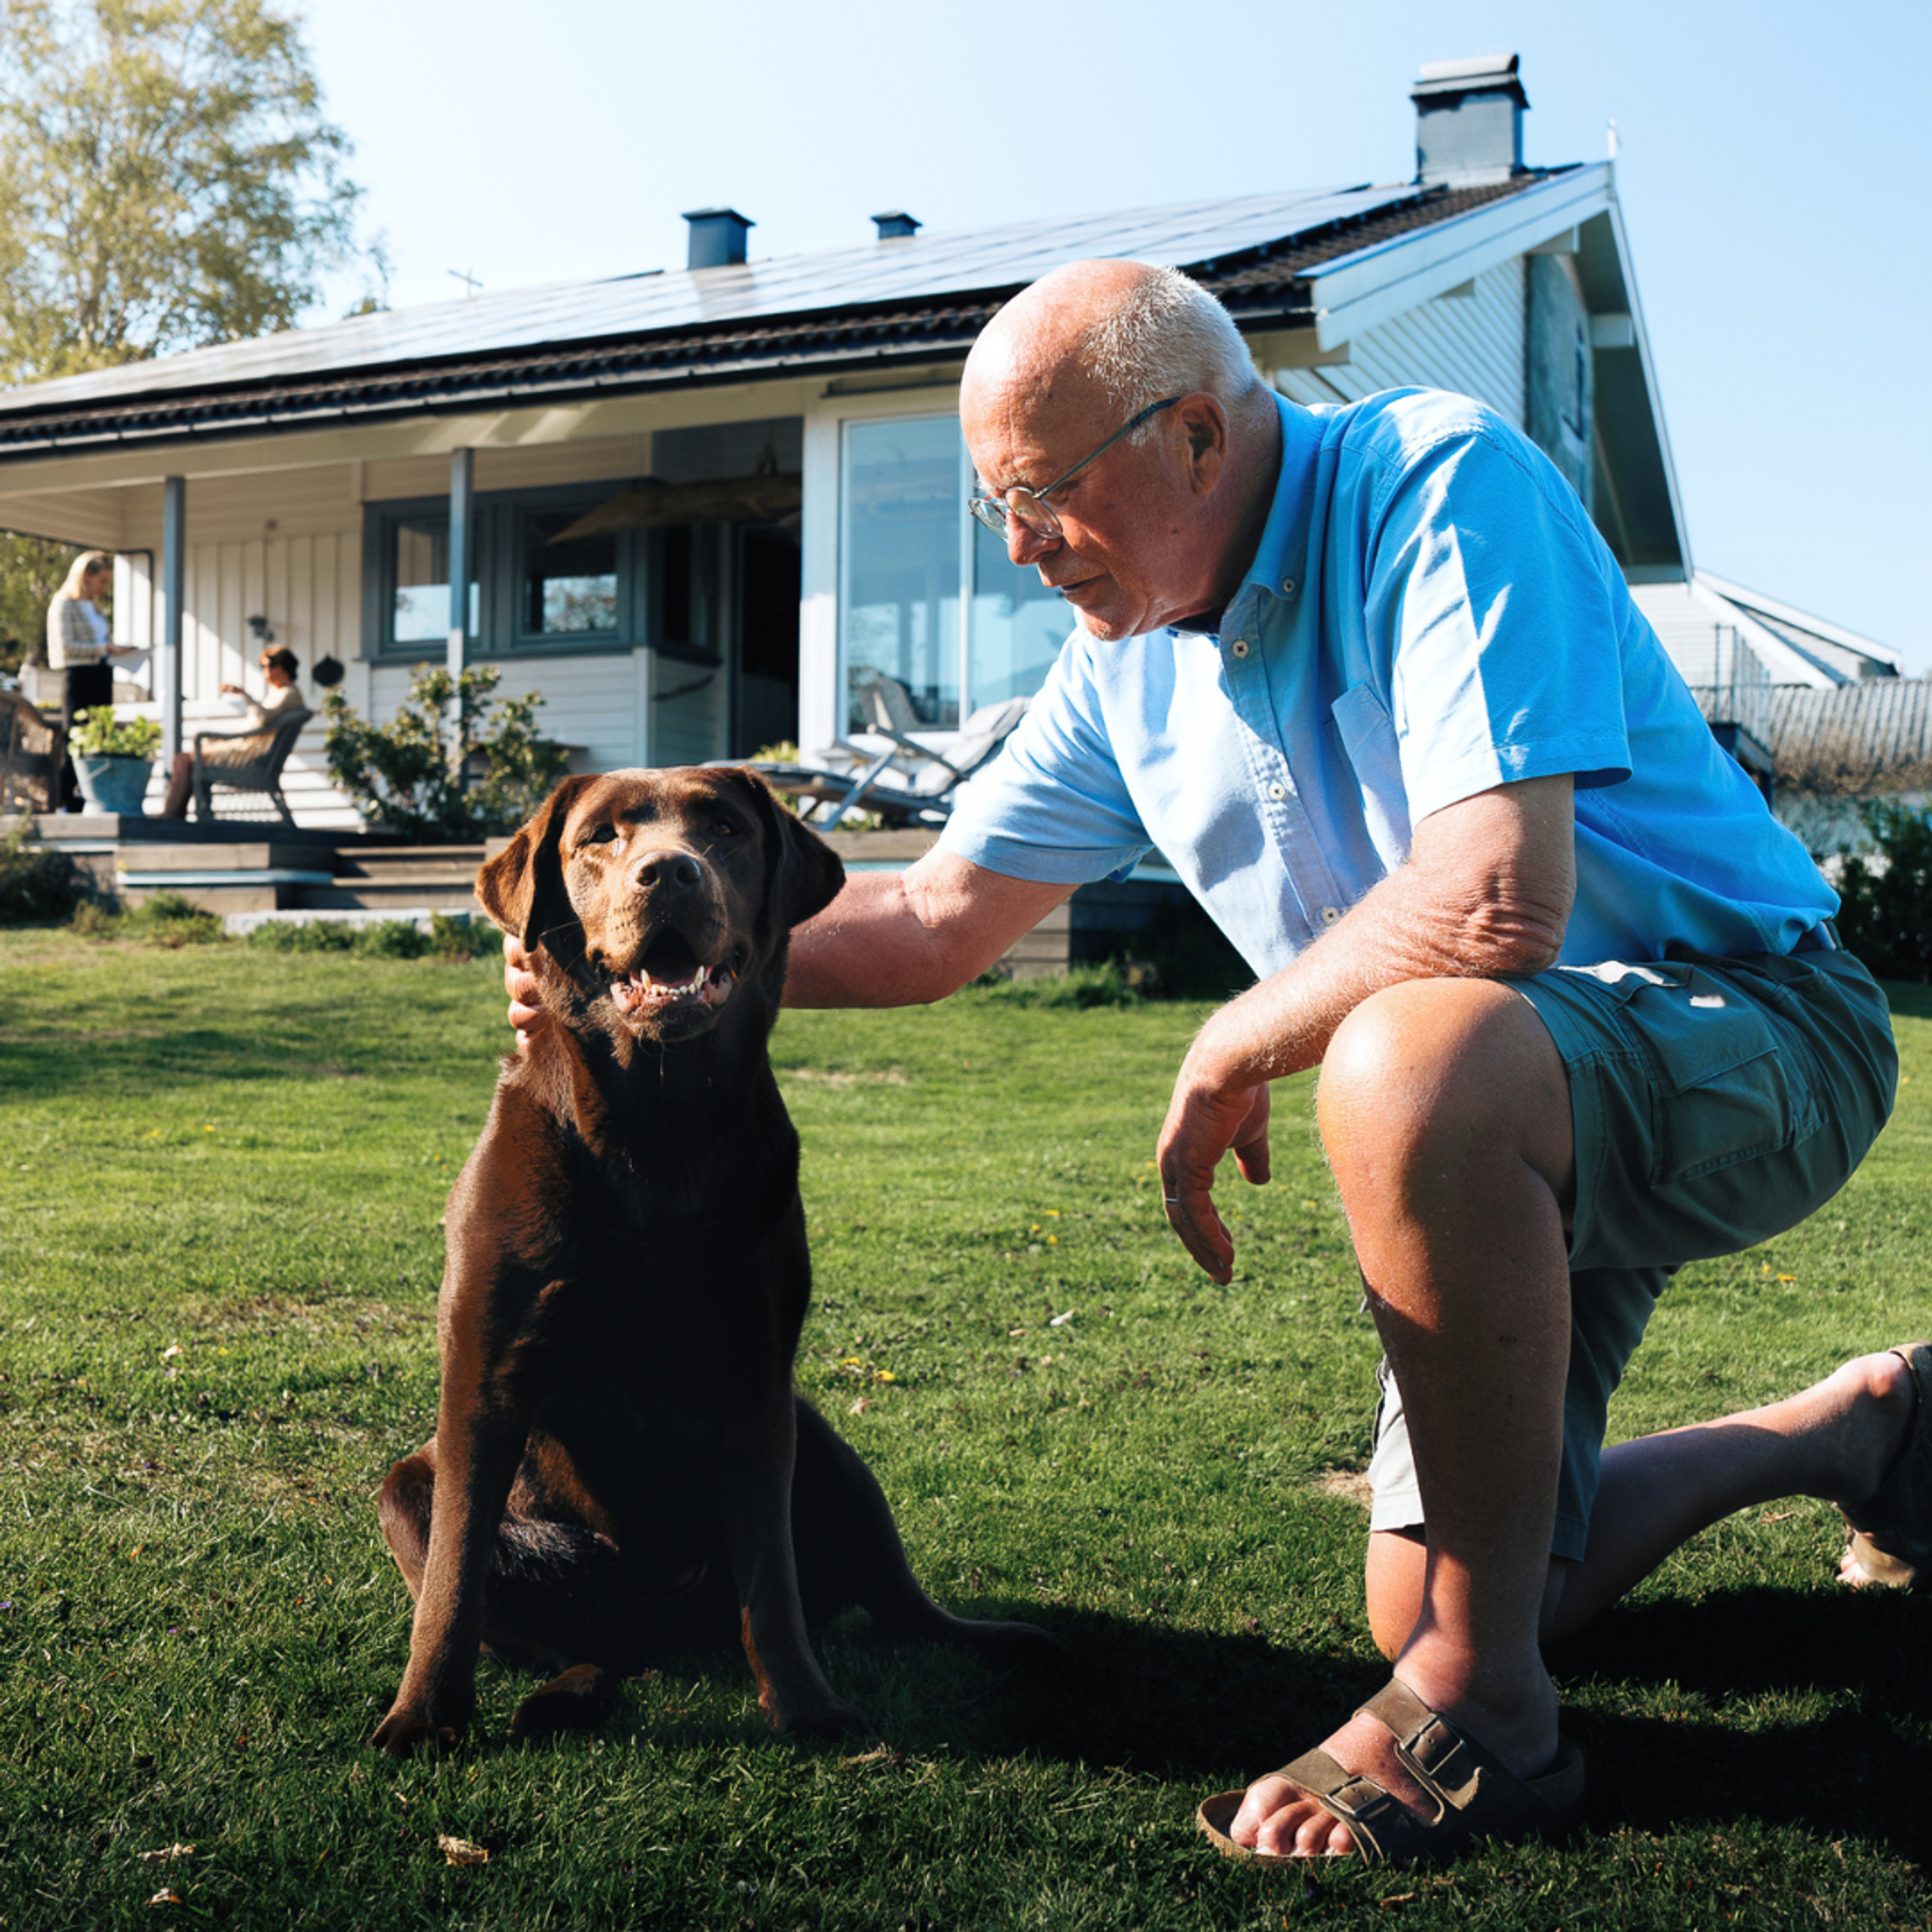 Haus mit Photovoltaikanlage auf dem Dach und Besitzer mit Hund im Vordergrund